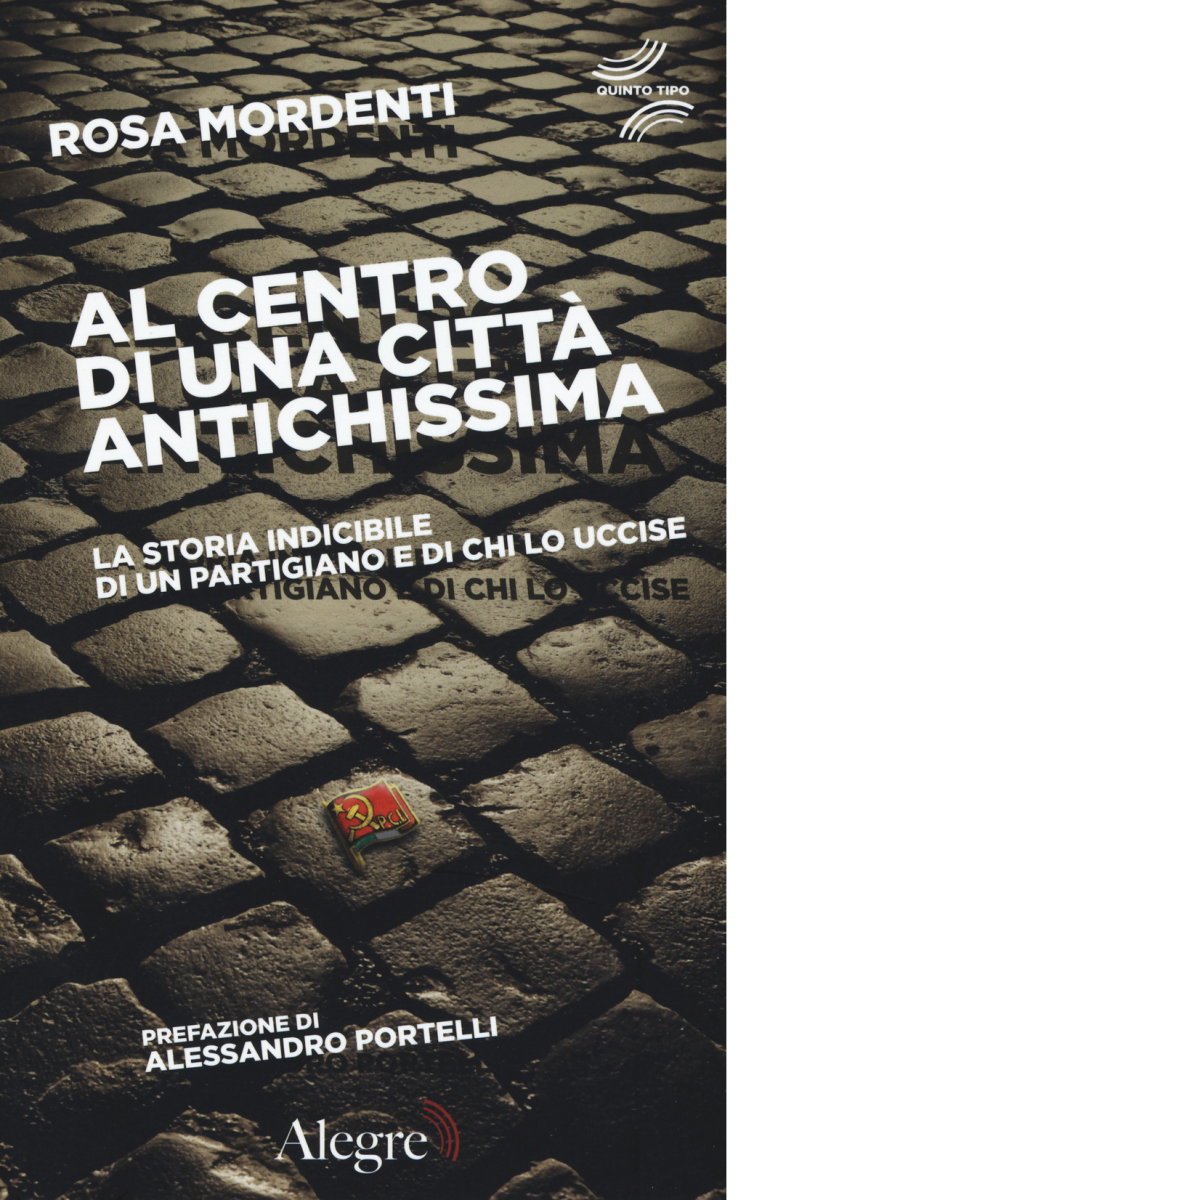 AL CENTRO DI UNA CITTA' ANTICHISSIMA di ROSA MARDENTI - Alegre, 2017 libro usato